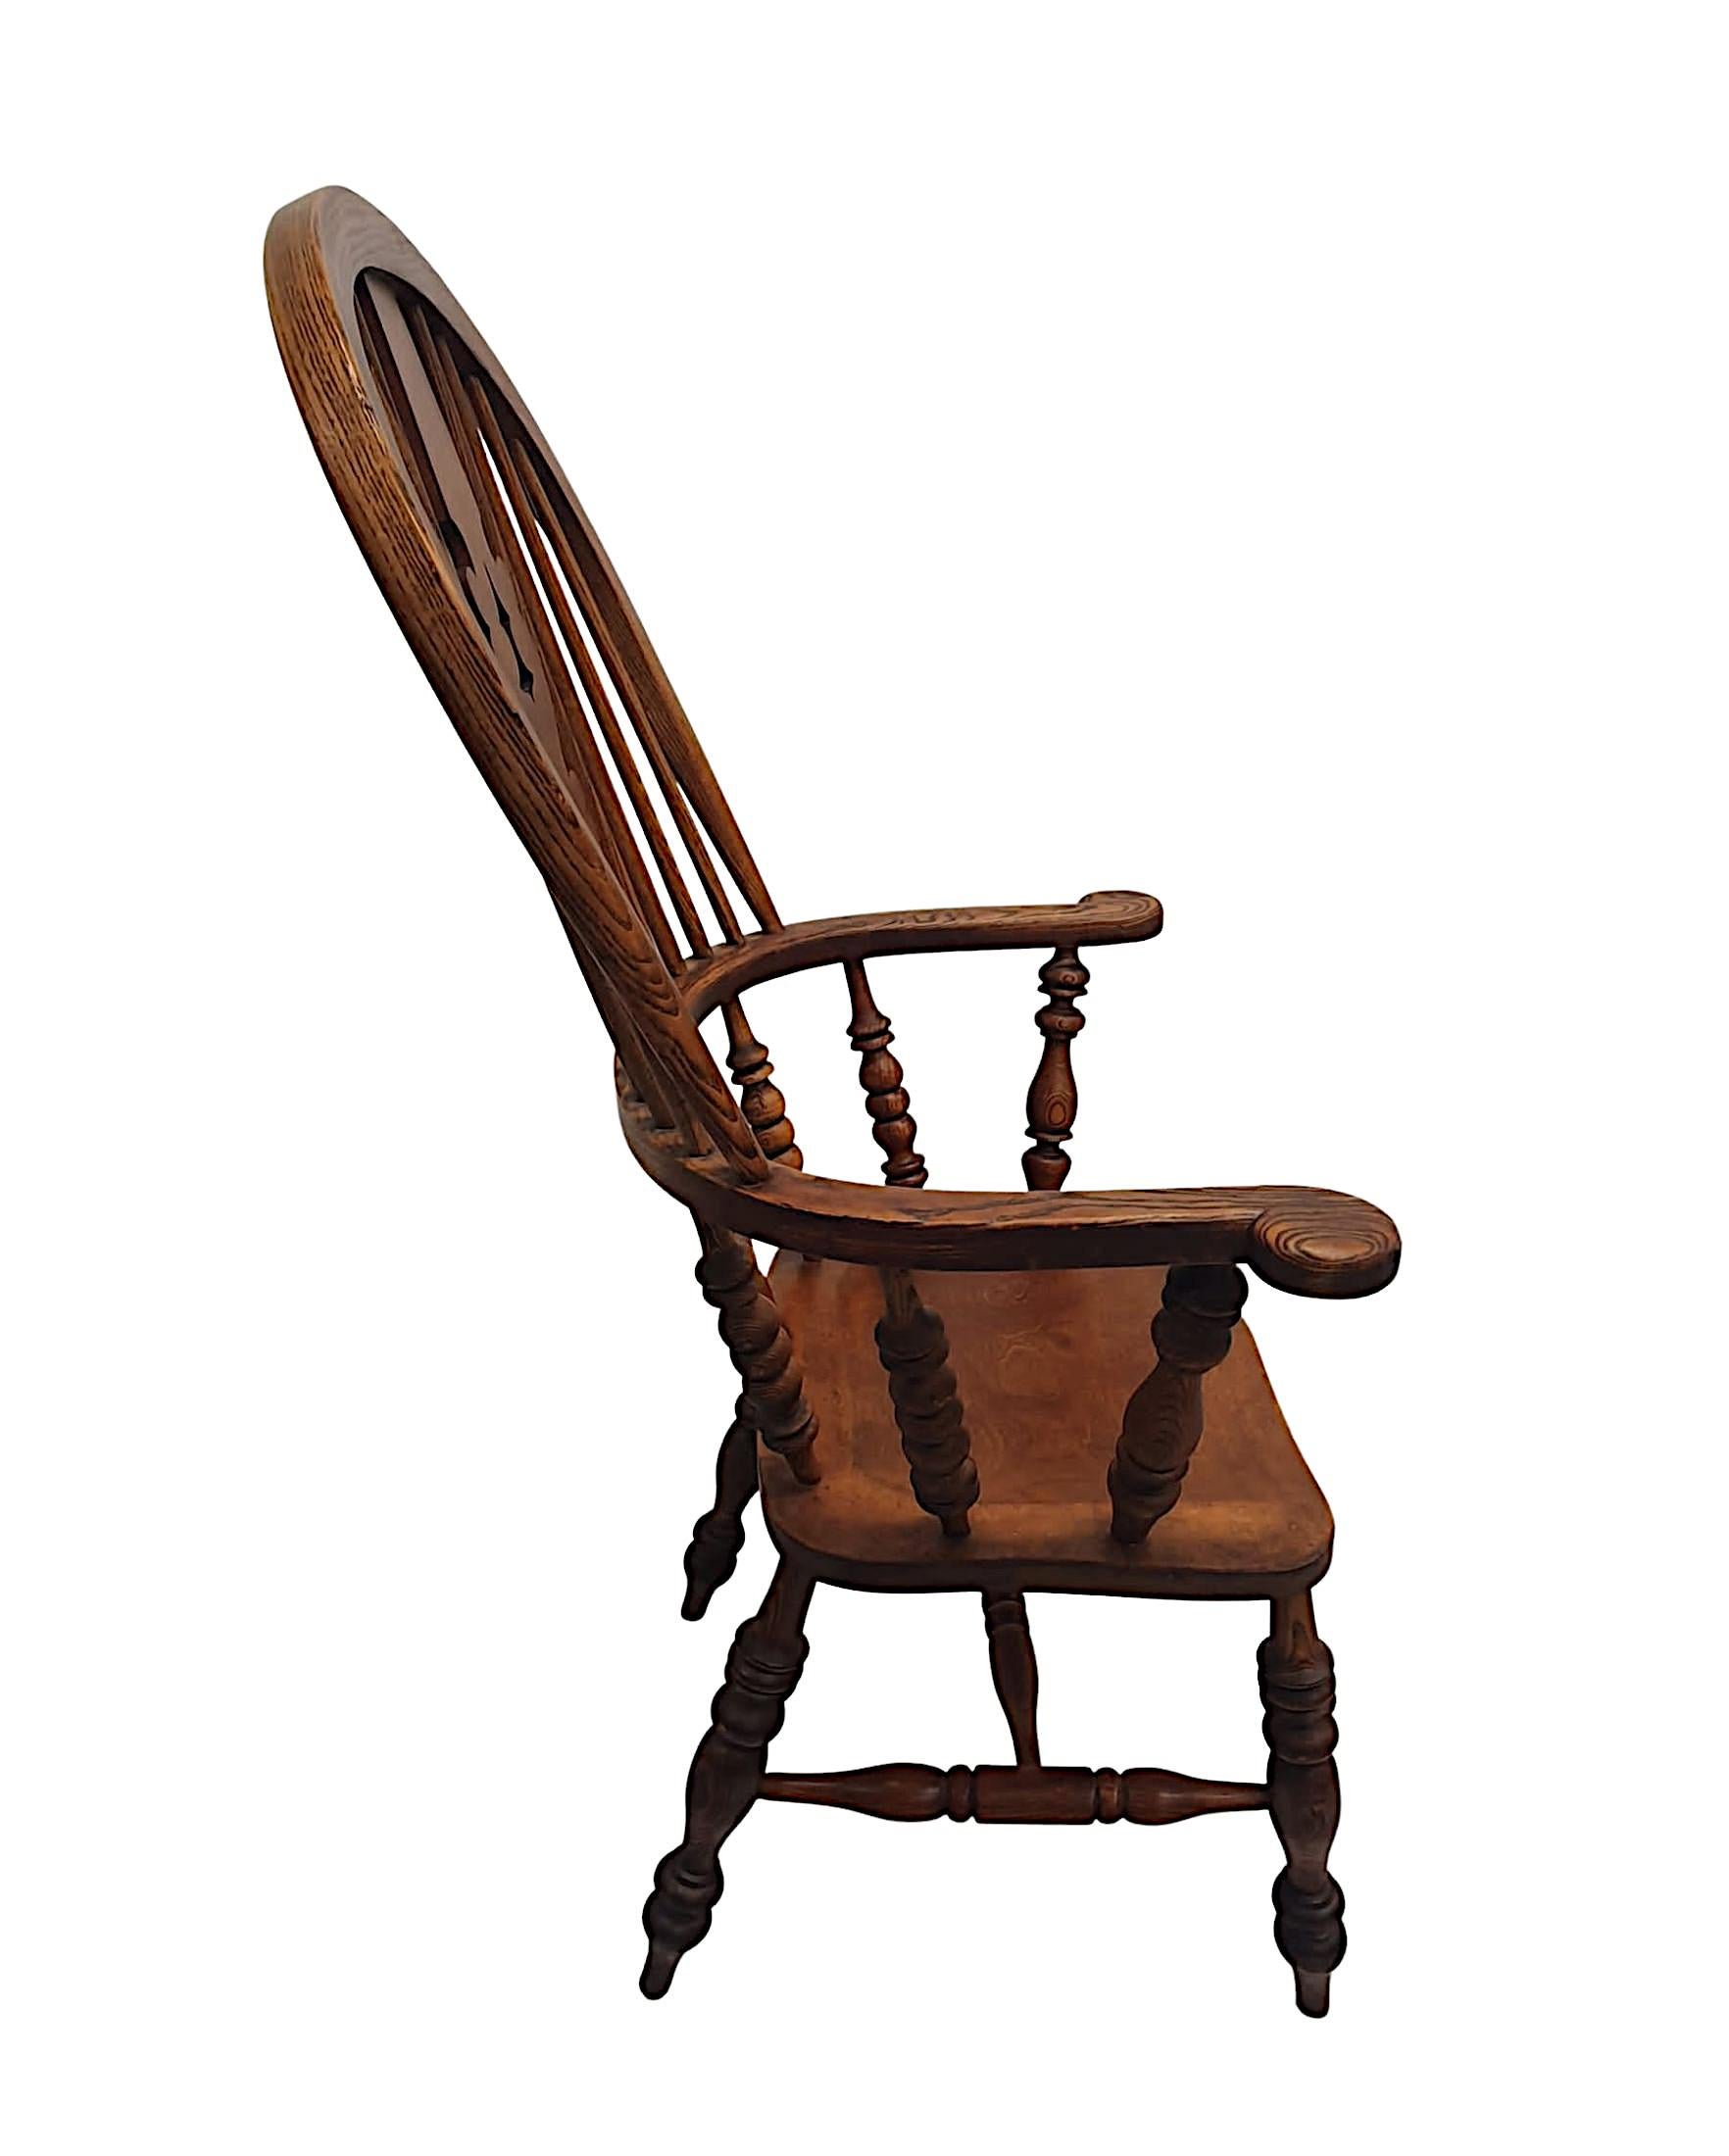 Eine seltene 19. Jahrhundert breiten Arm Esche und Ulme windsor Sessel von außergewöhnlicher Qualität, fein von Hand geschnitzt mit herrlich reich Patina und Maserung. Der hohe Bügelrücken mit zentraler, geformter, geschnittener Rückenleiste mit